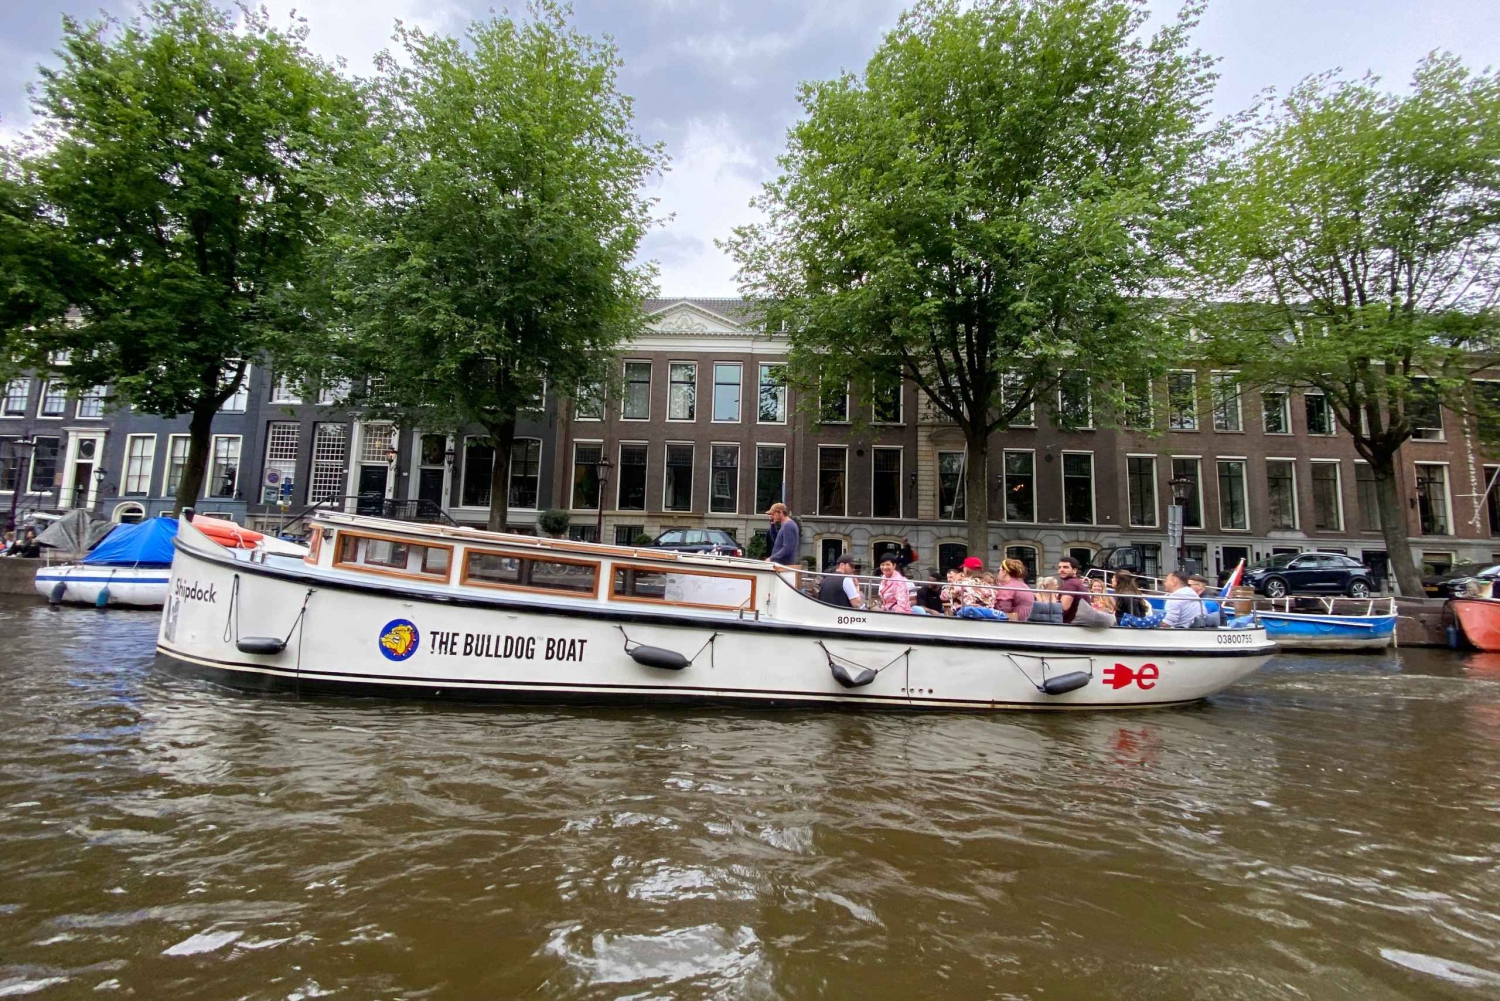 Amsterdam: The Bulldog Boat Smoke-Friendly Winter Cruise